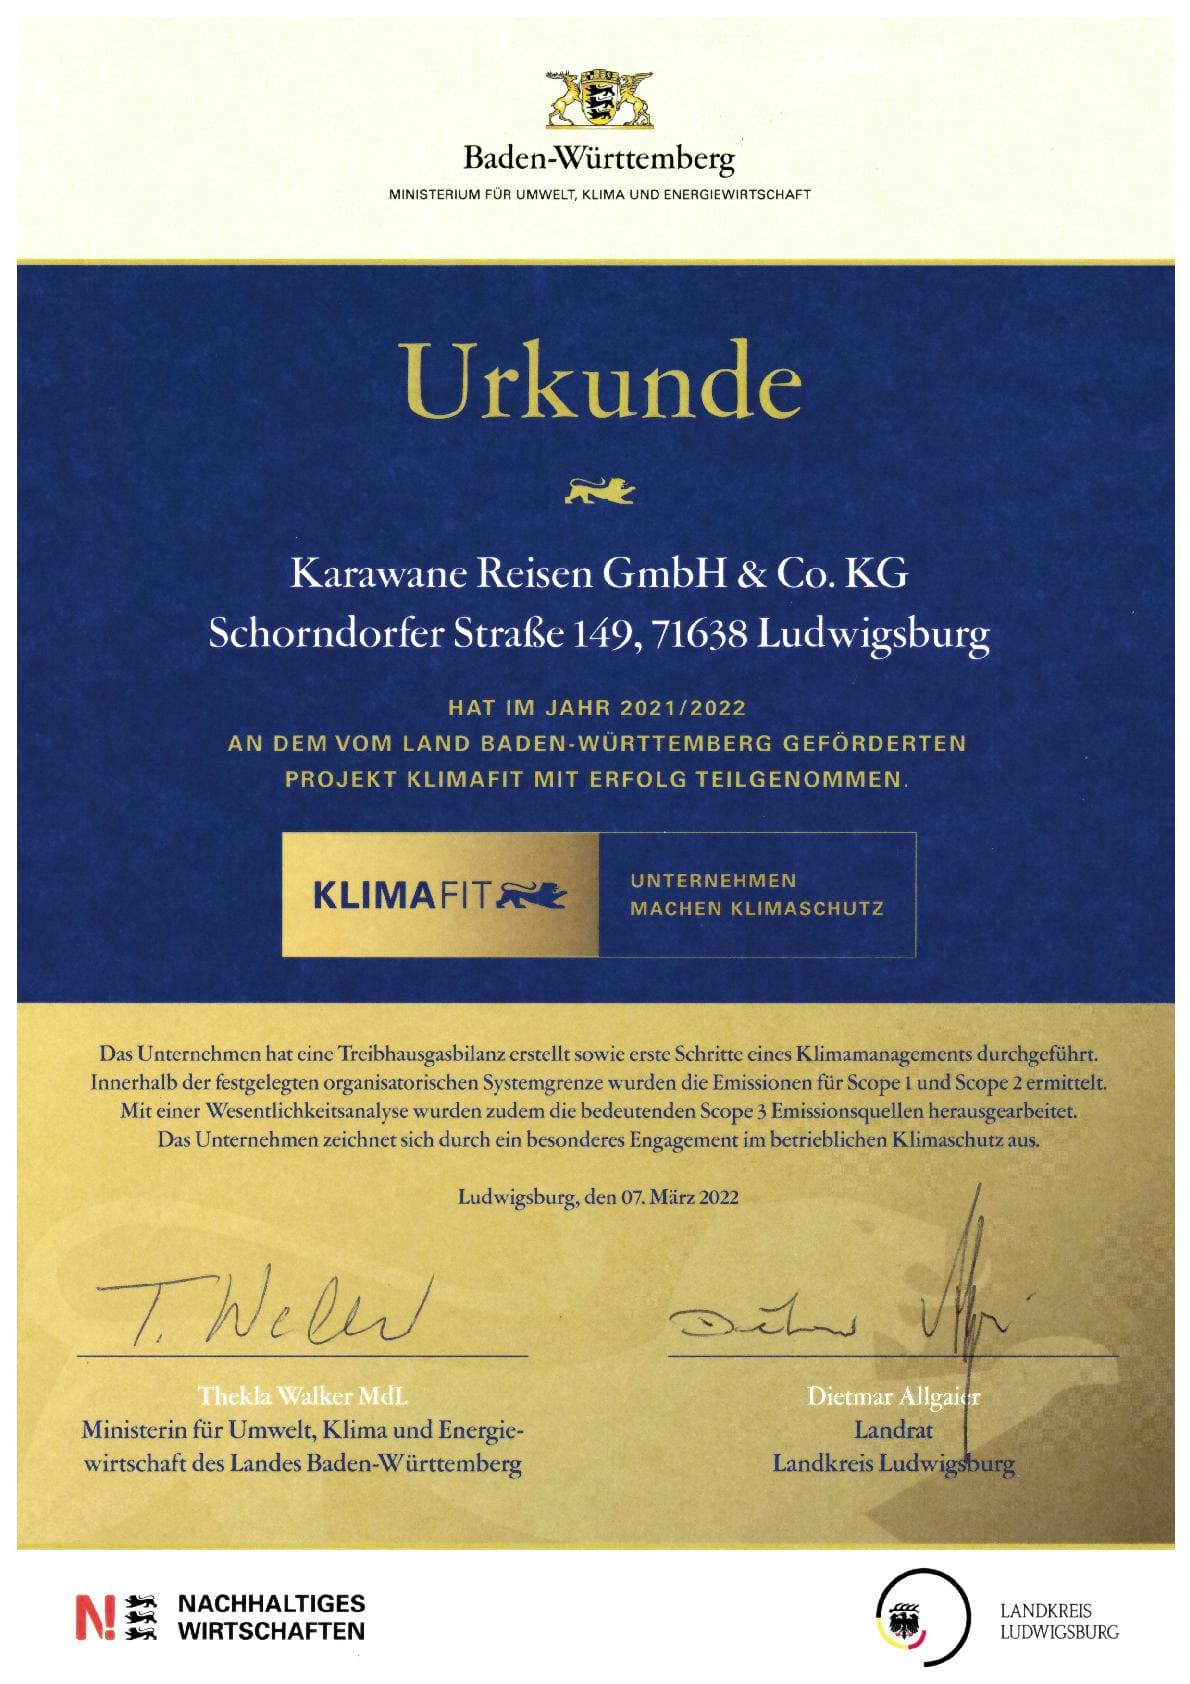 KLIMAfit Urkunde Karawane